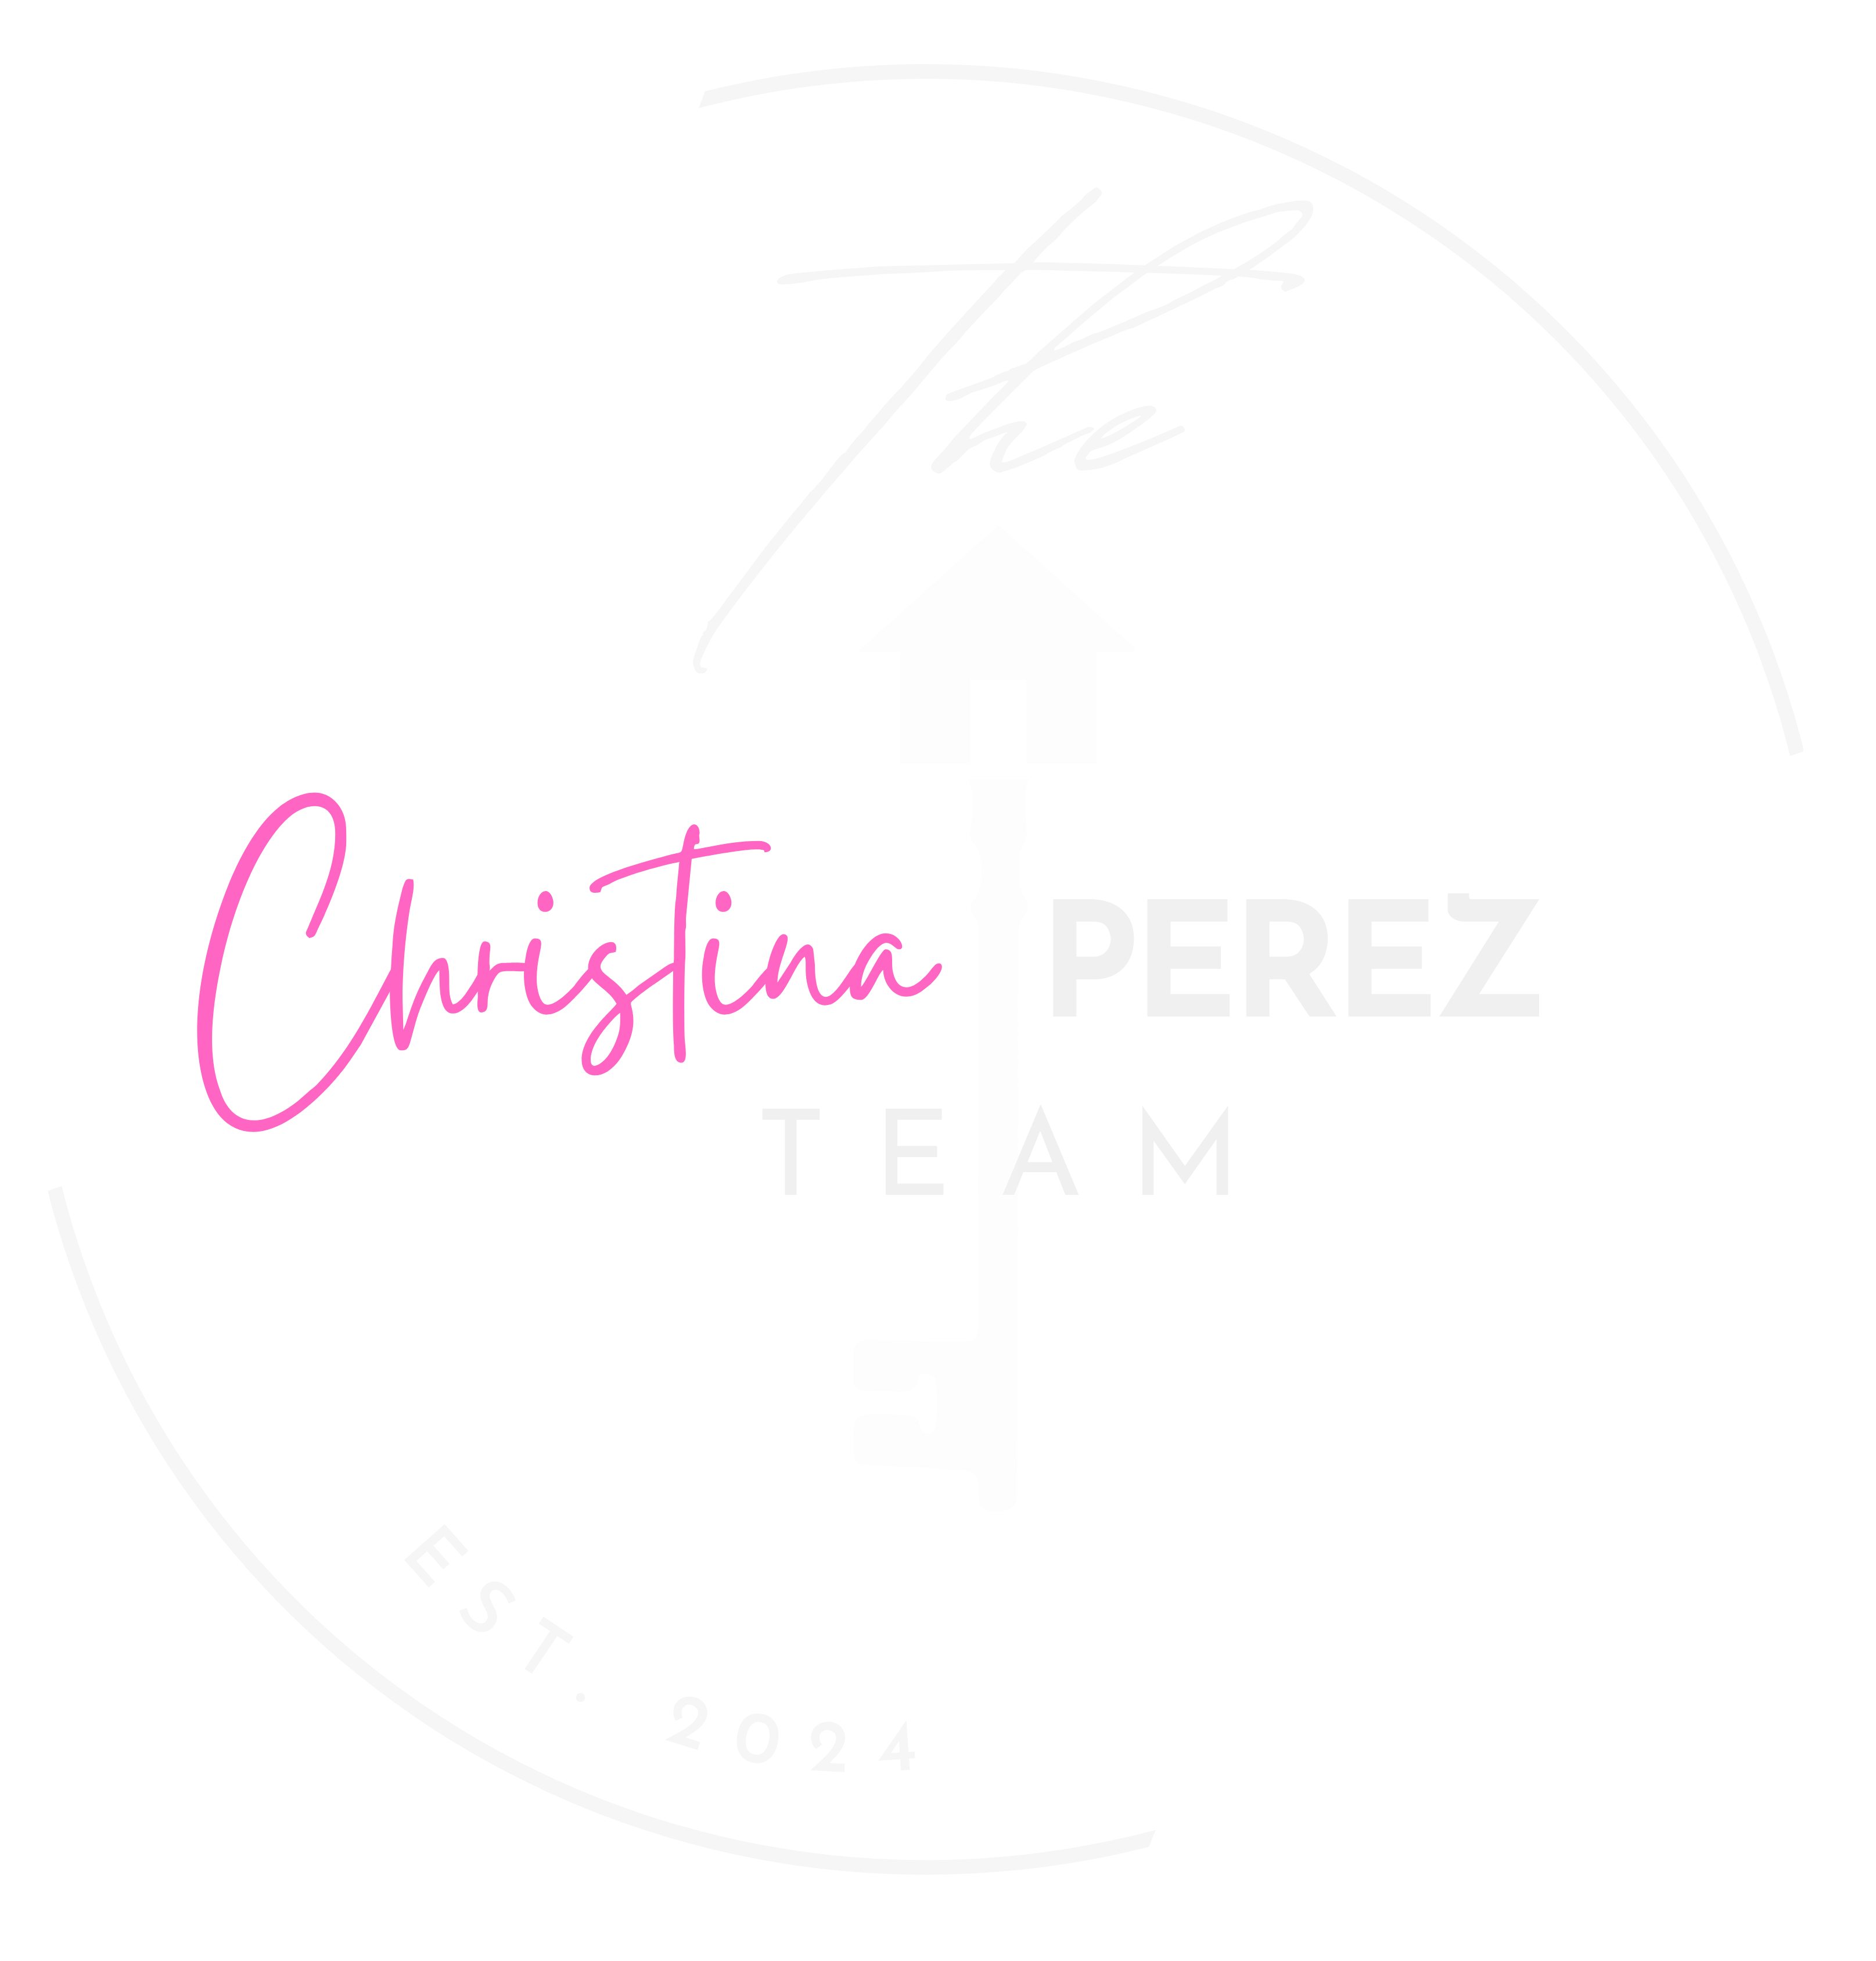 Christina perez team logo